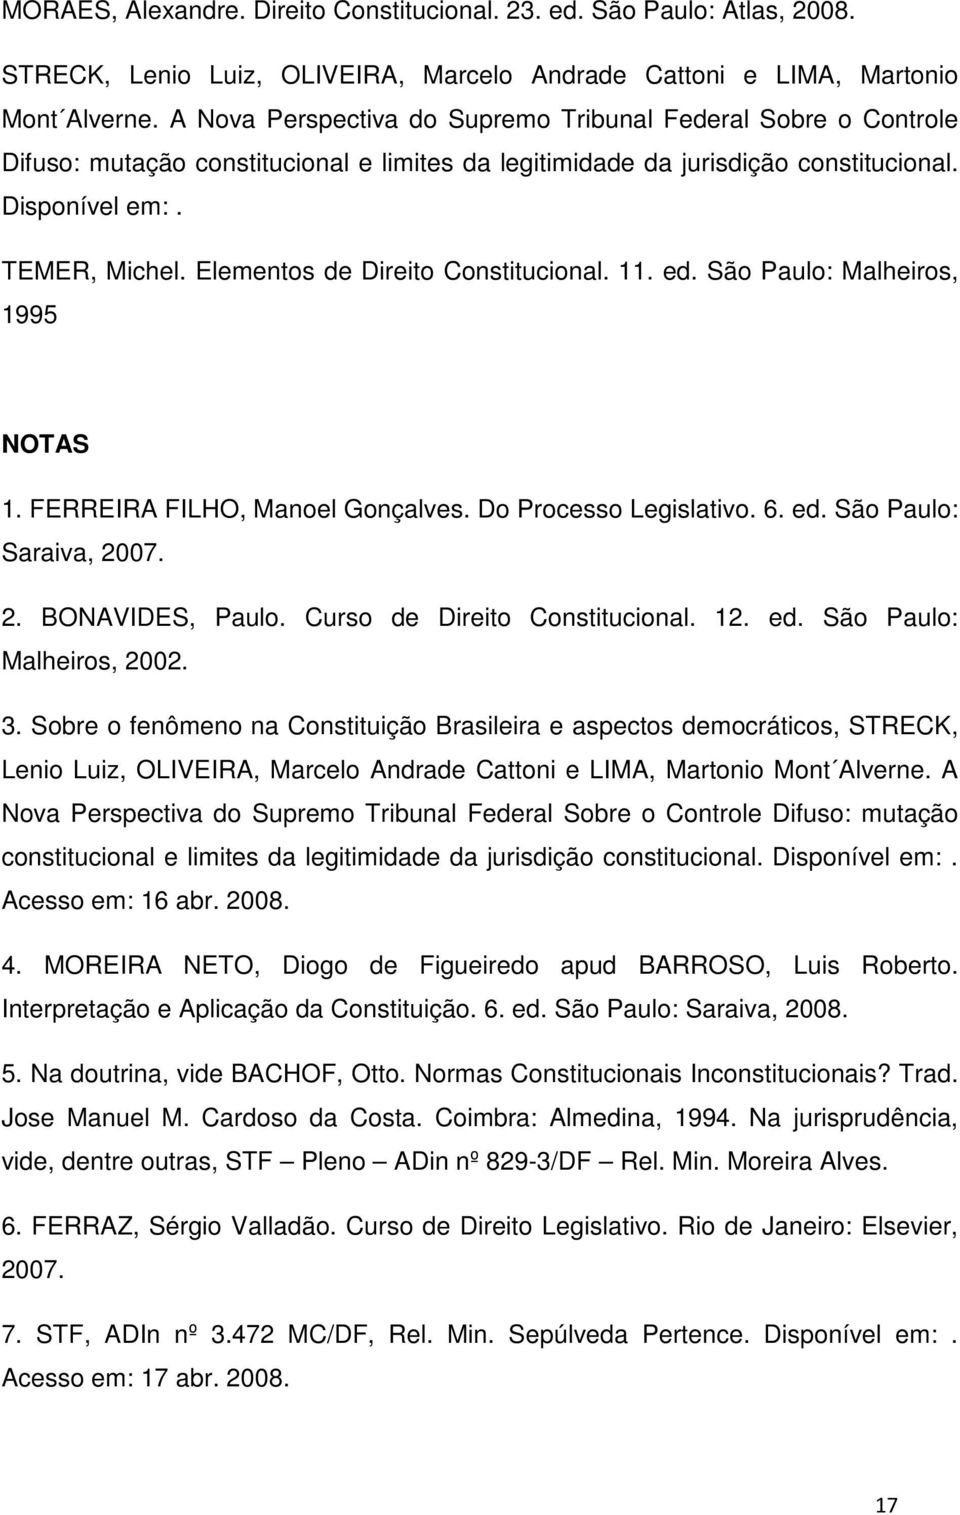 Elementos de Direito Constitucional. 11. ed. São Paulo: Malheiros, 1995 NOTAS 1. FERREIRA FILHO, Manoel Gonçalves. Do Processo Legislativo. 6. ed. São Paulo: Saraiva, 2007. 2. BONAVIDES, Paulo.